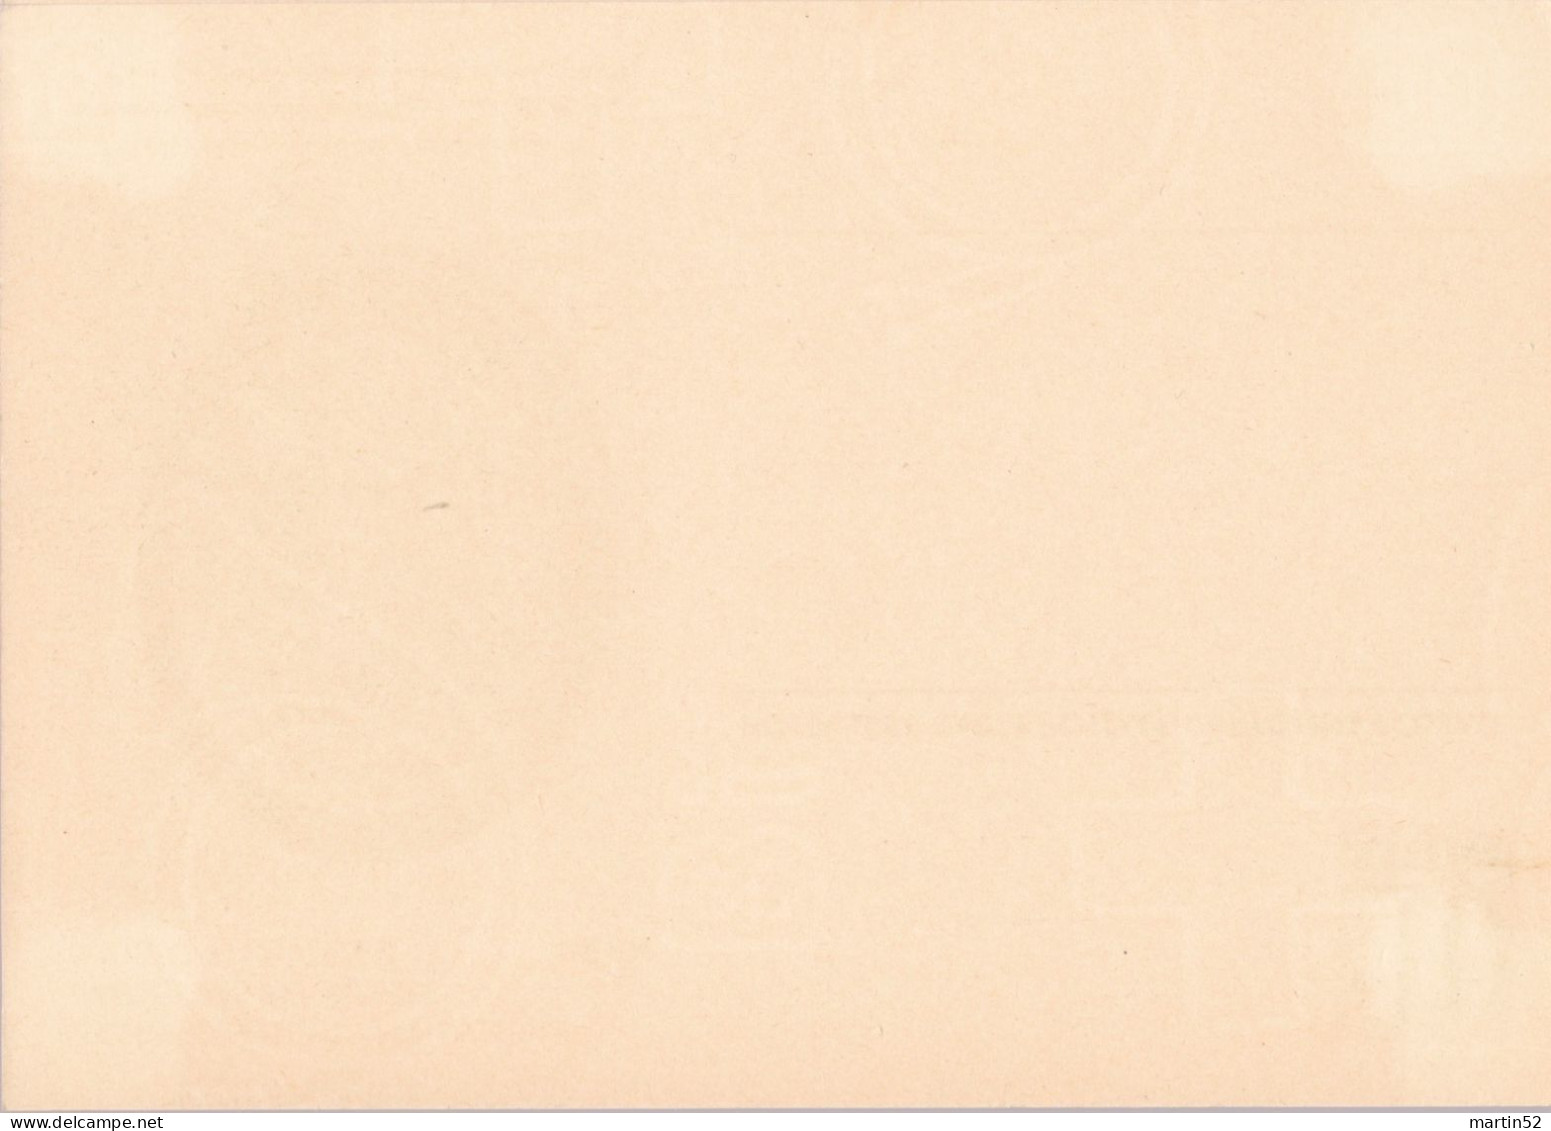 Schweiz Suisse 1950: Bild-PK POSTMUSEUM CPI MUSÉE POSTALE Zumstein-N° 183 A TELEGRAPHIE 1868 Ungelaufen / Non Circulé - Télégraphe